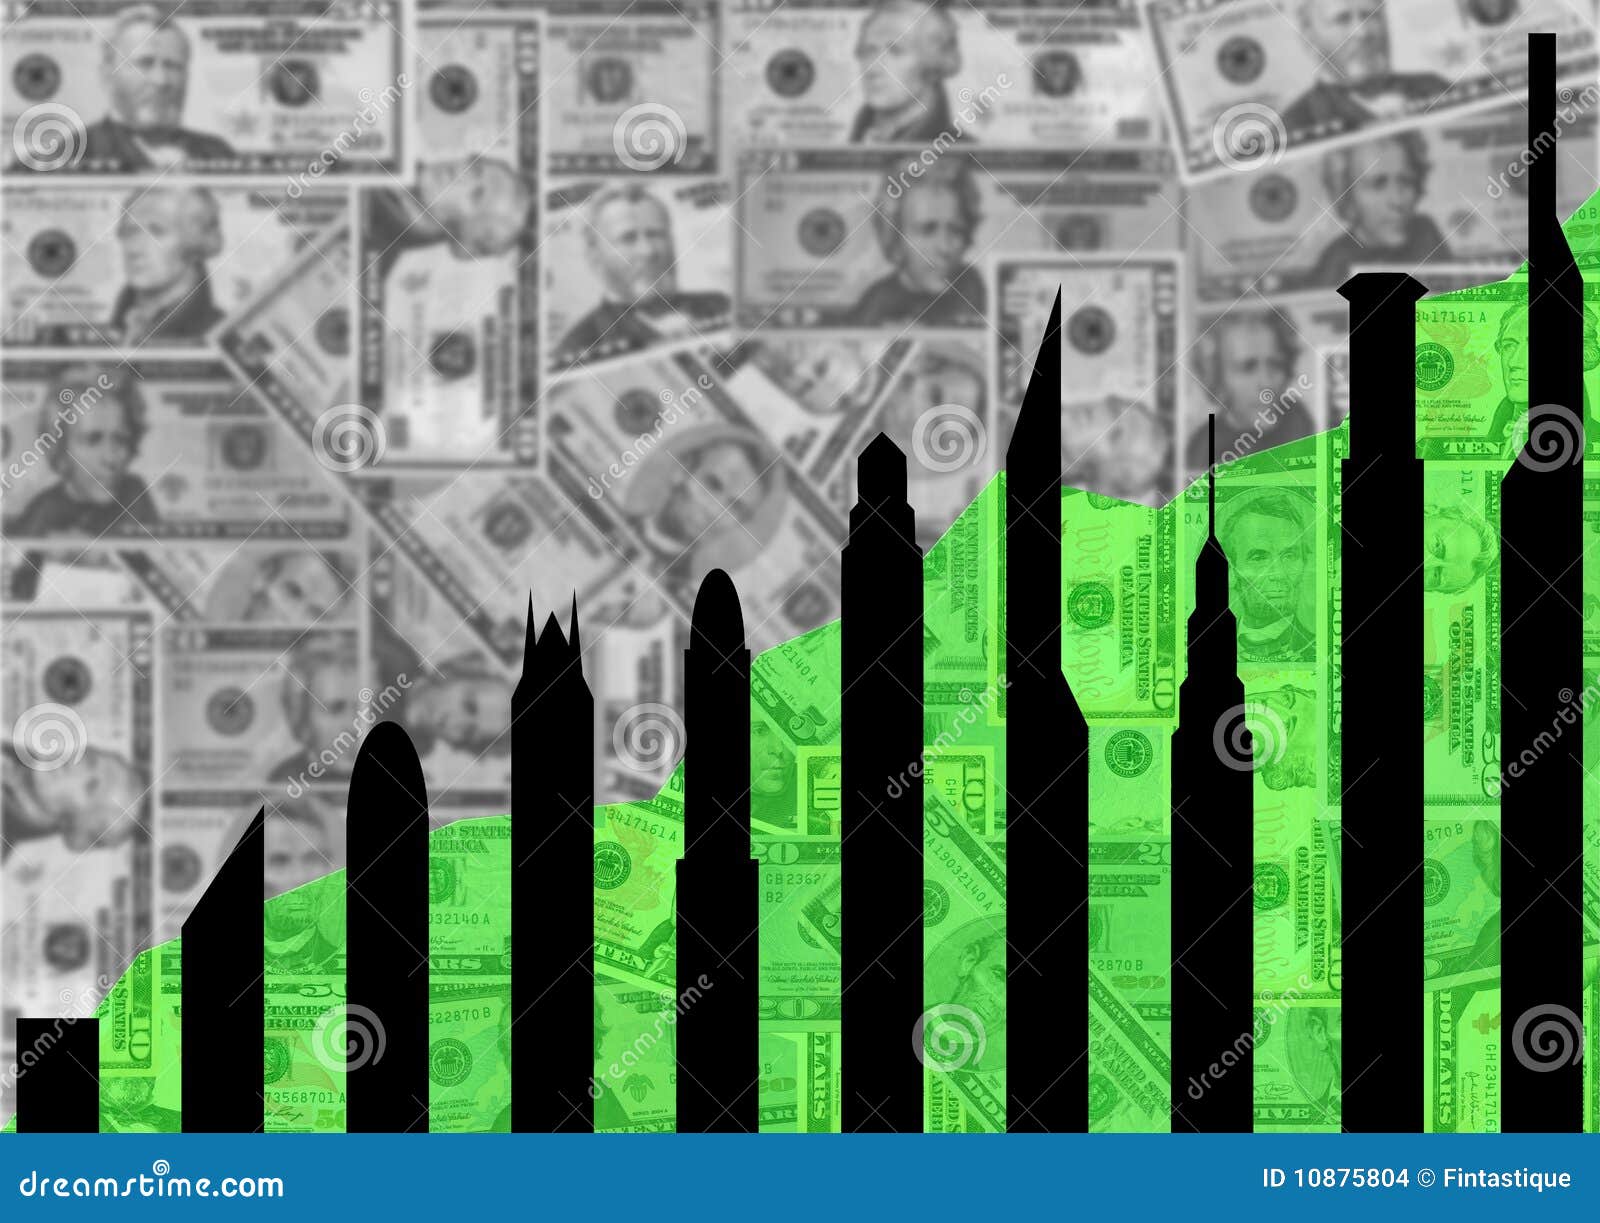 Wolkenkratzer silhouettiert Diagramm mit Dollar. Wolkenkratzerschattenbilder und grünes Diagramm auf amerikanischer Dollarabbildung